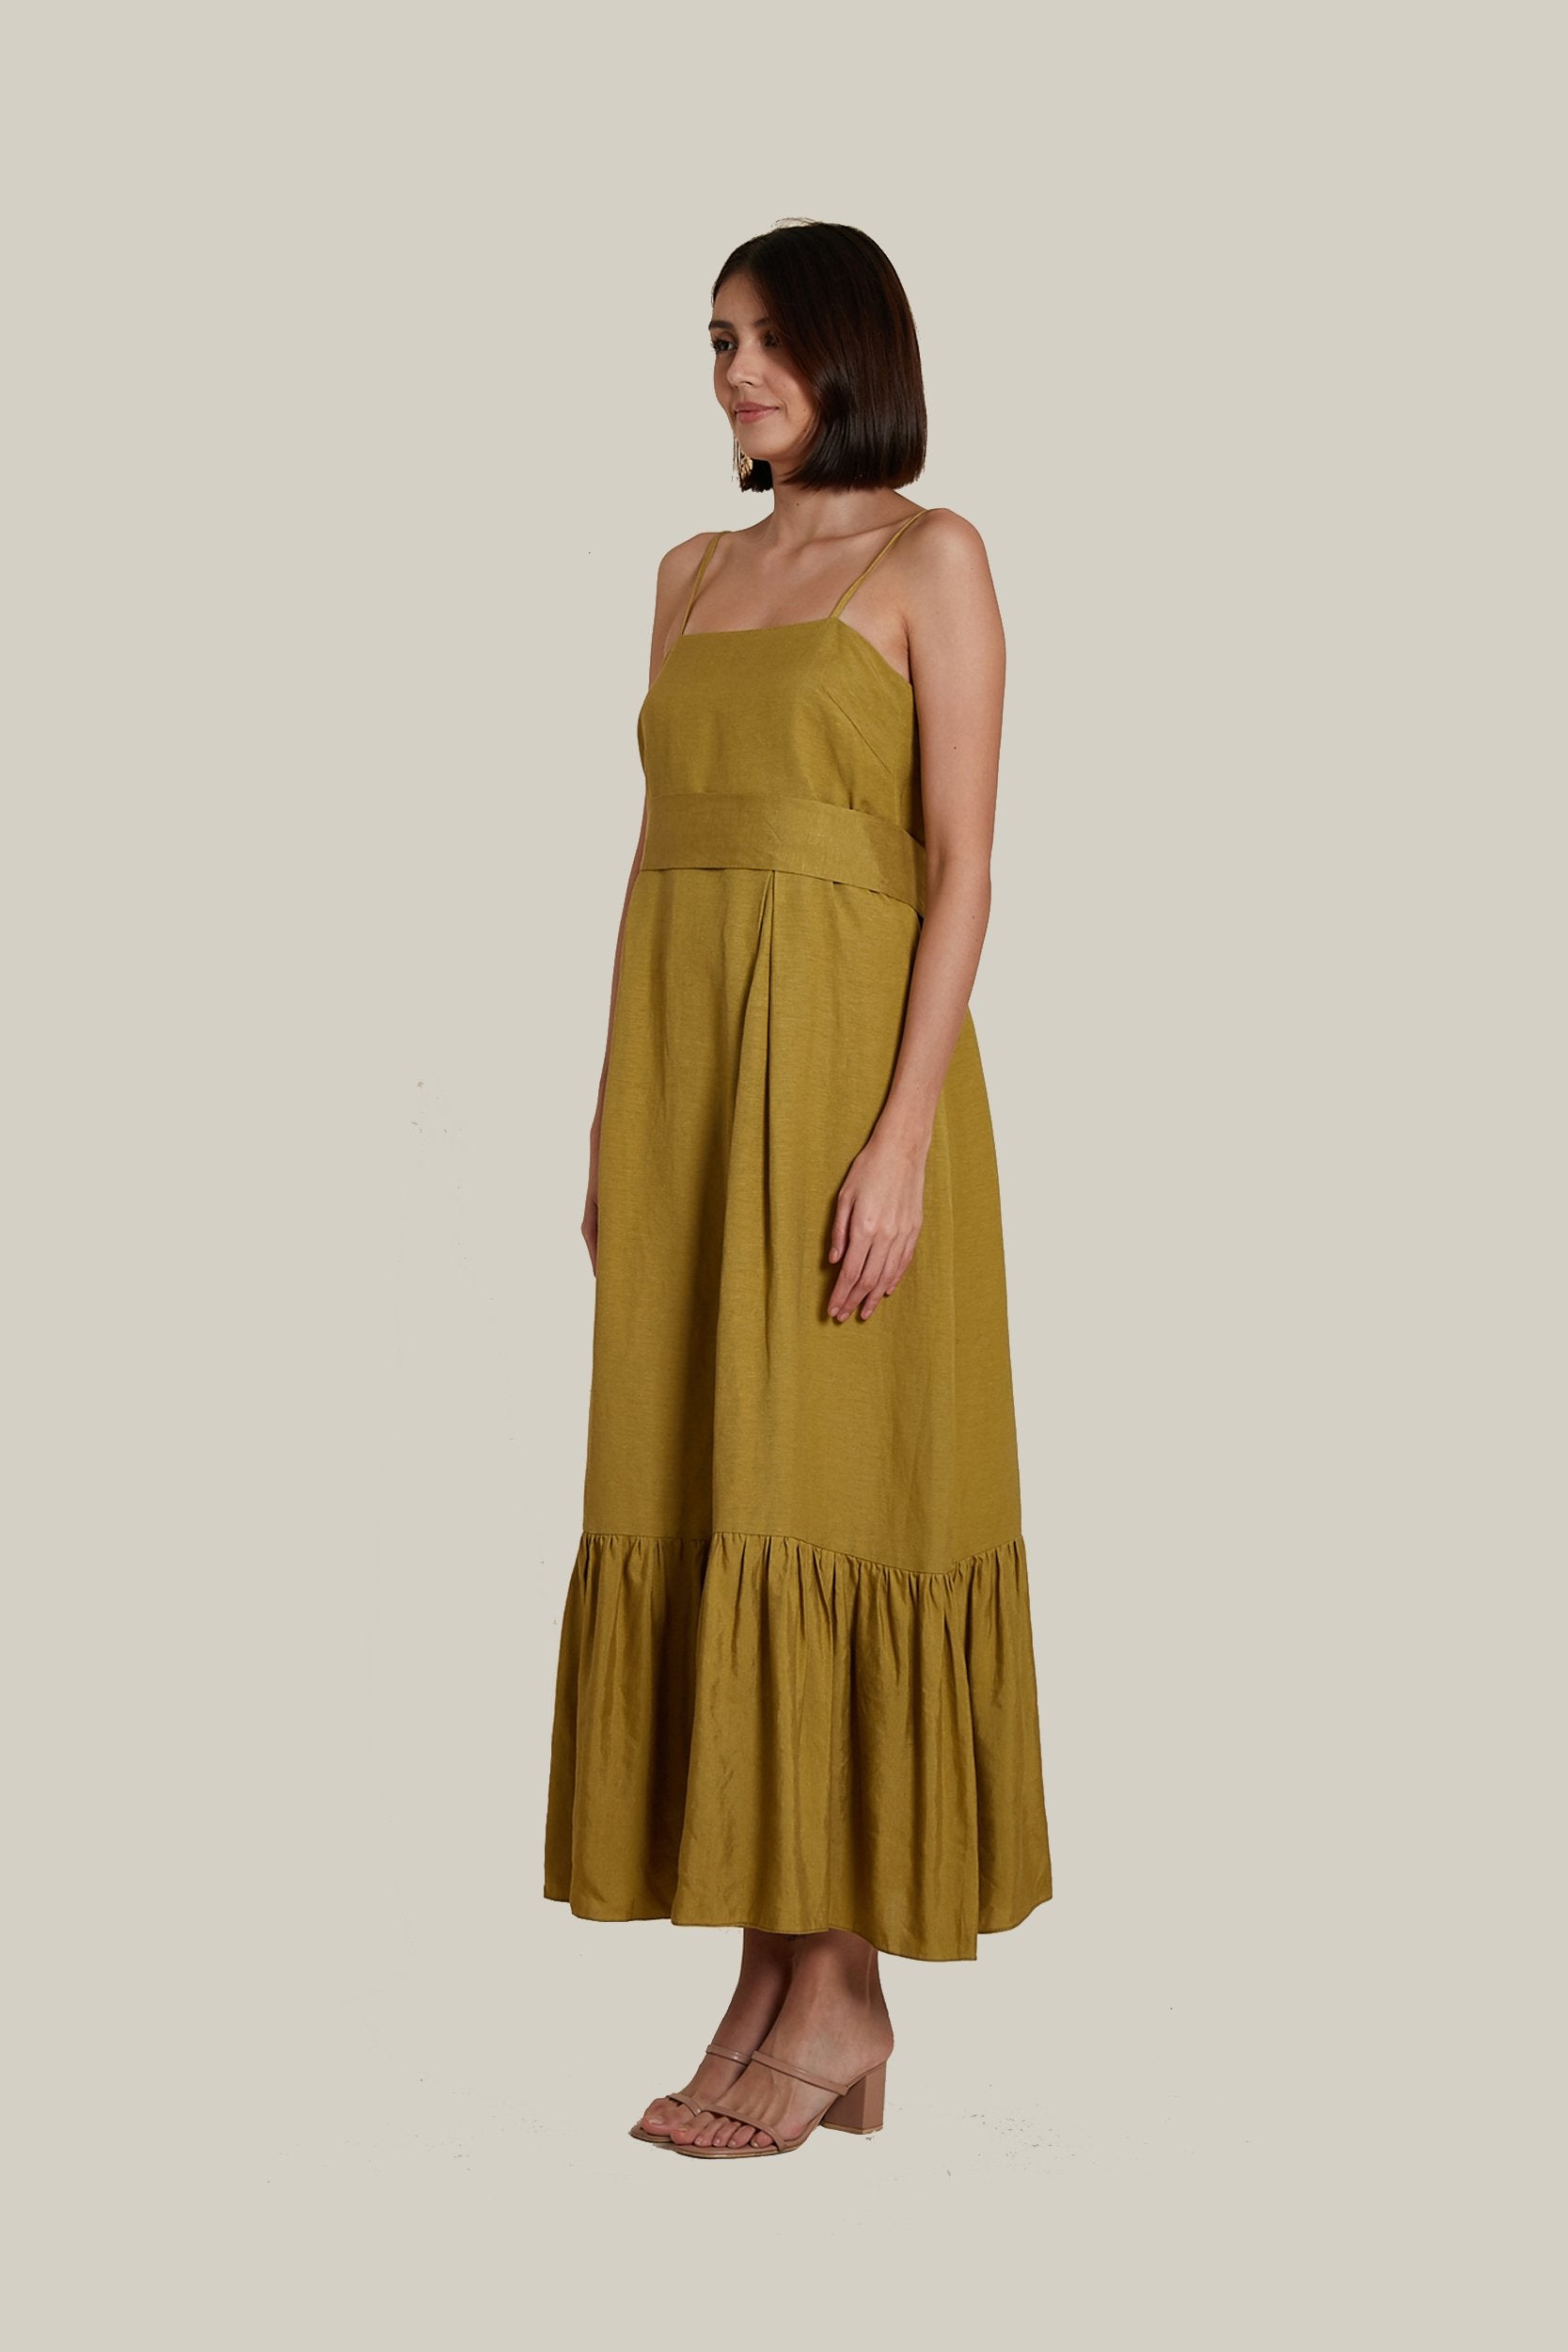 Slip On Dress in Olive Linen